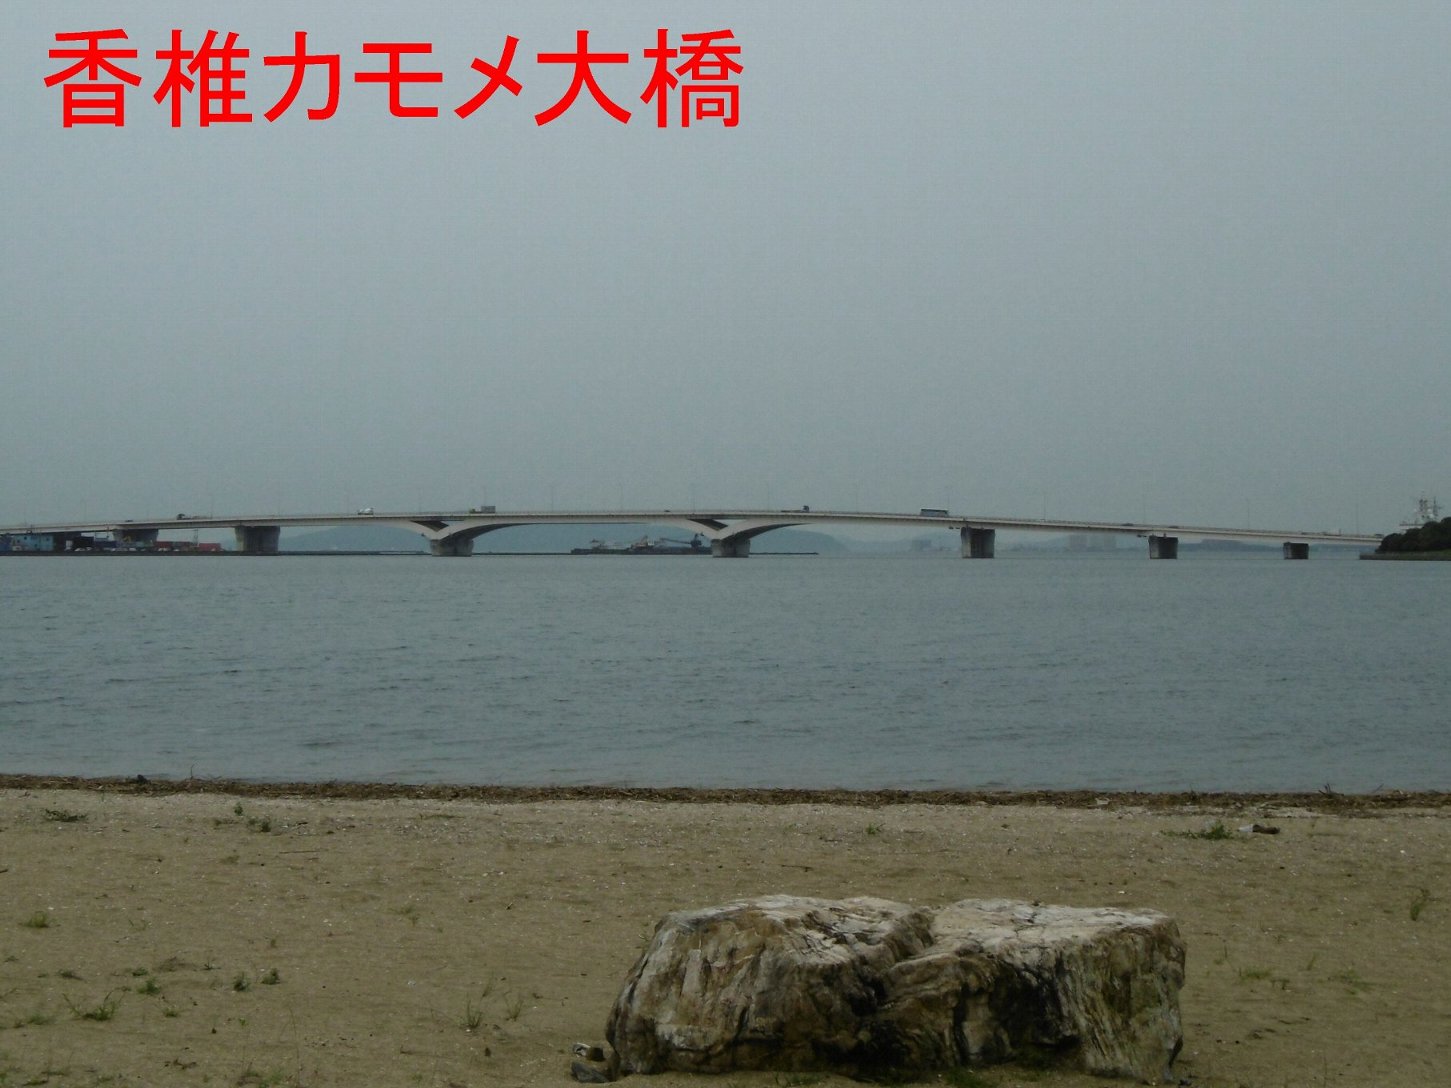 香椎カモメ大橋の写真